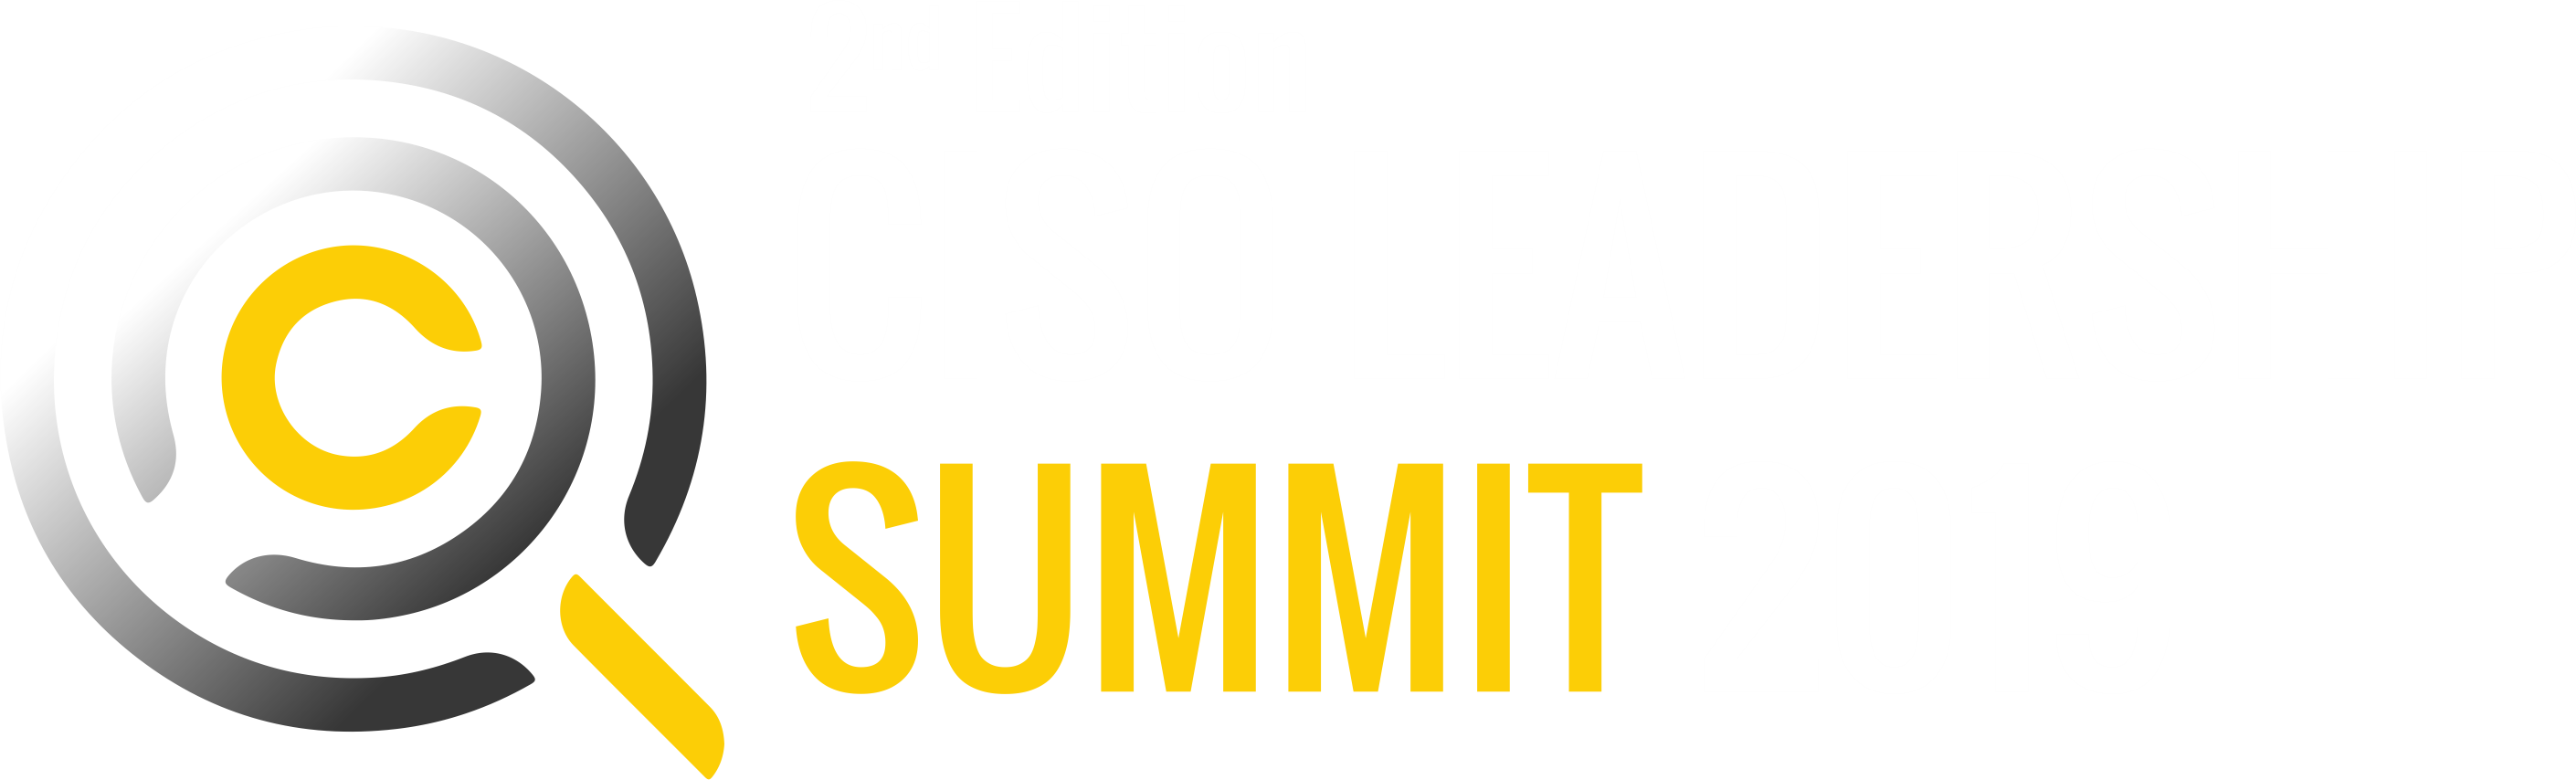 CIDO leadership summit 2019